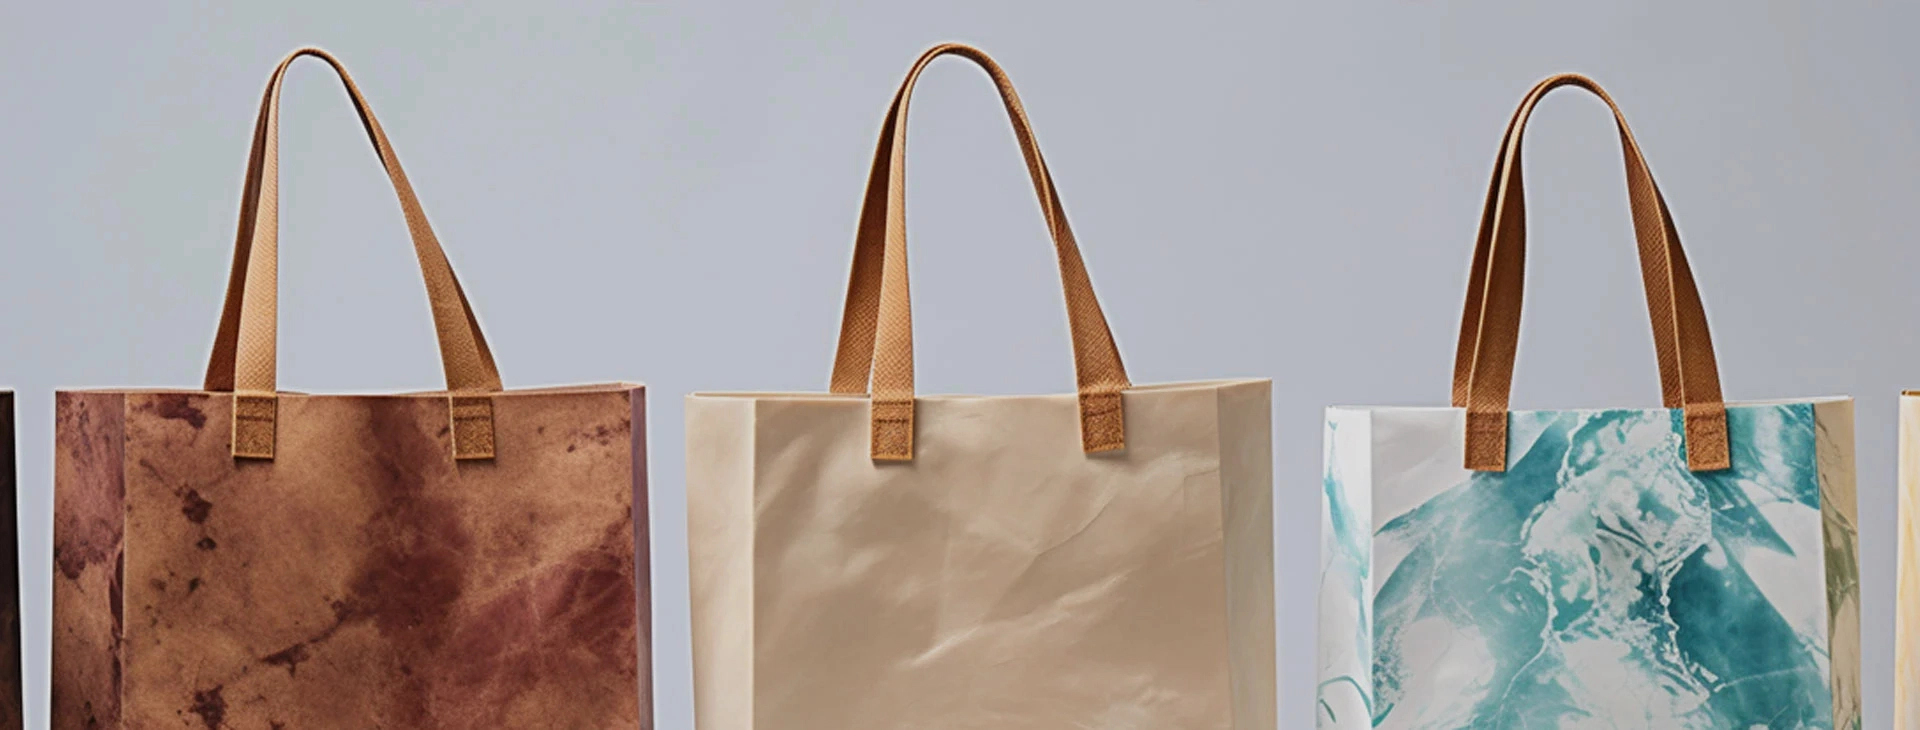 Quality Chenfa Shopping Bags